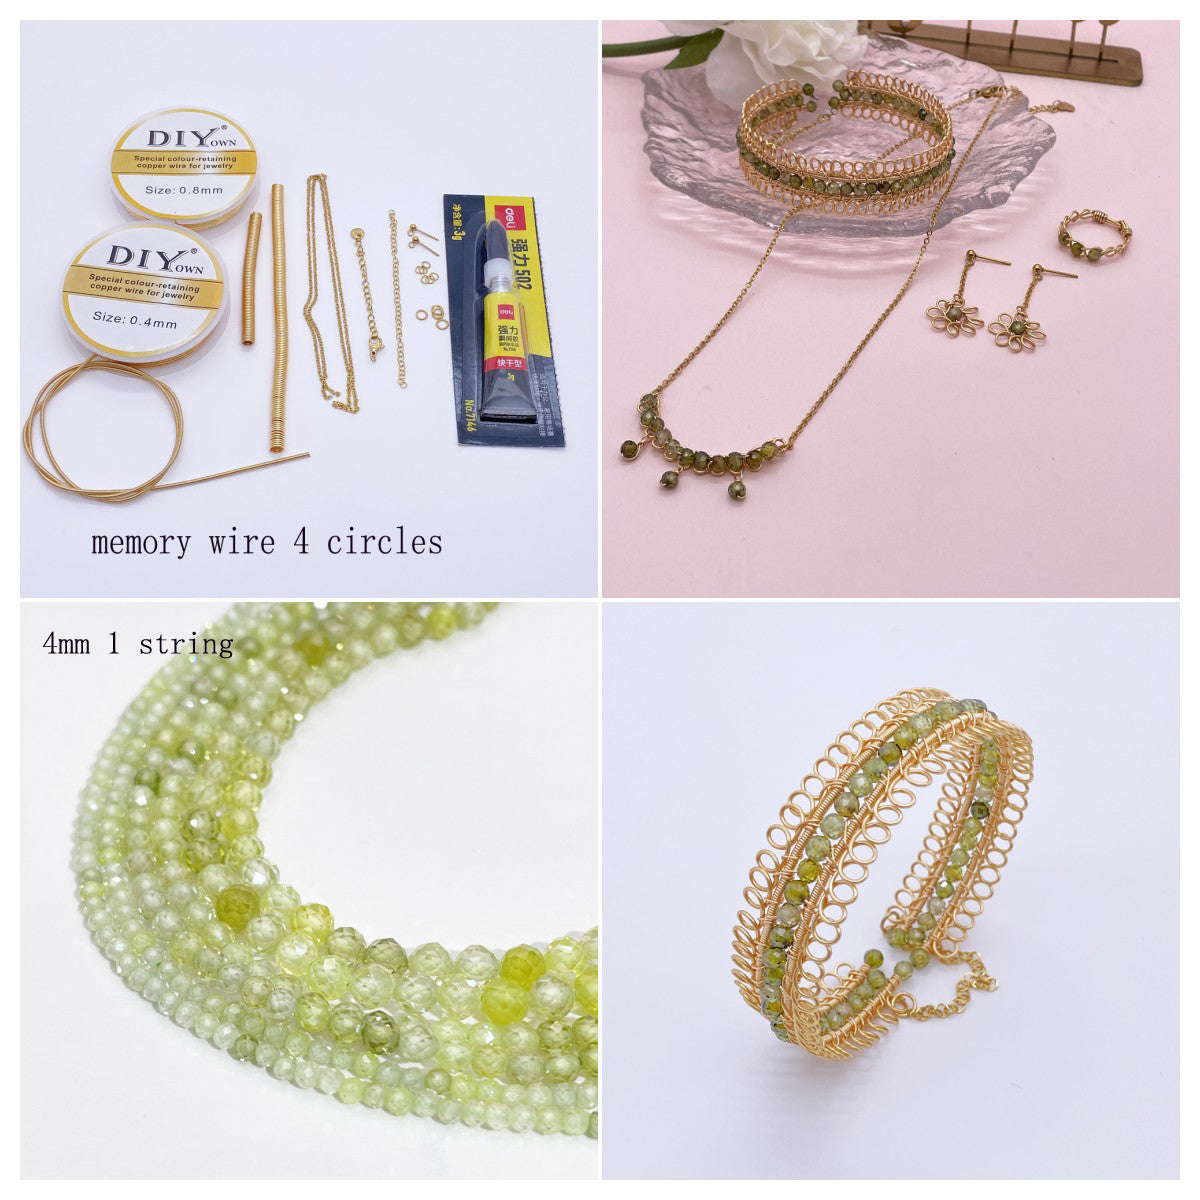 Kit 325 Lace bangle jewelry Kit